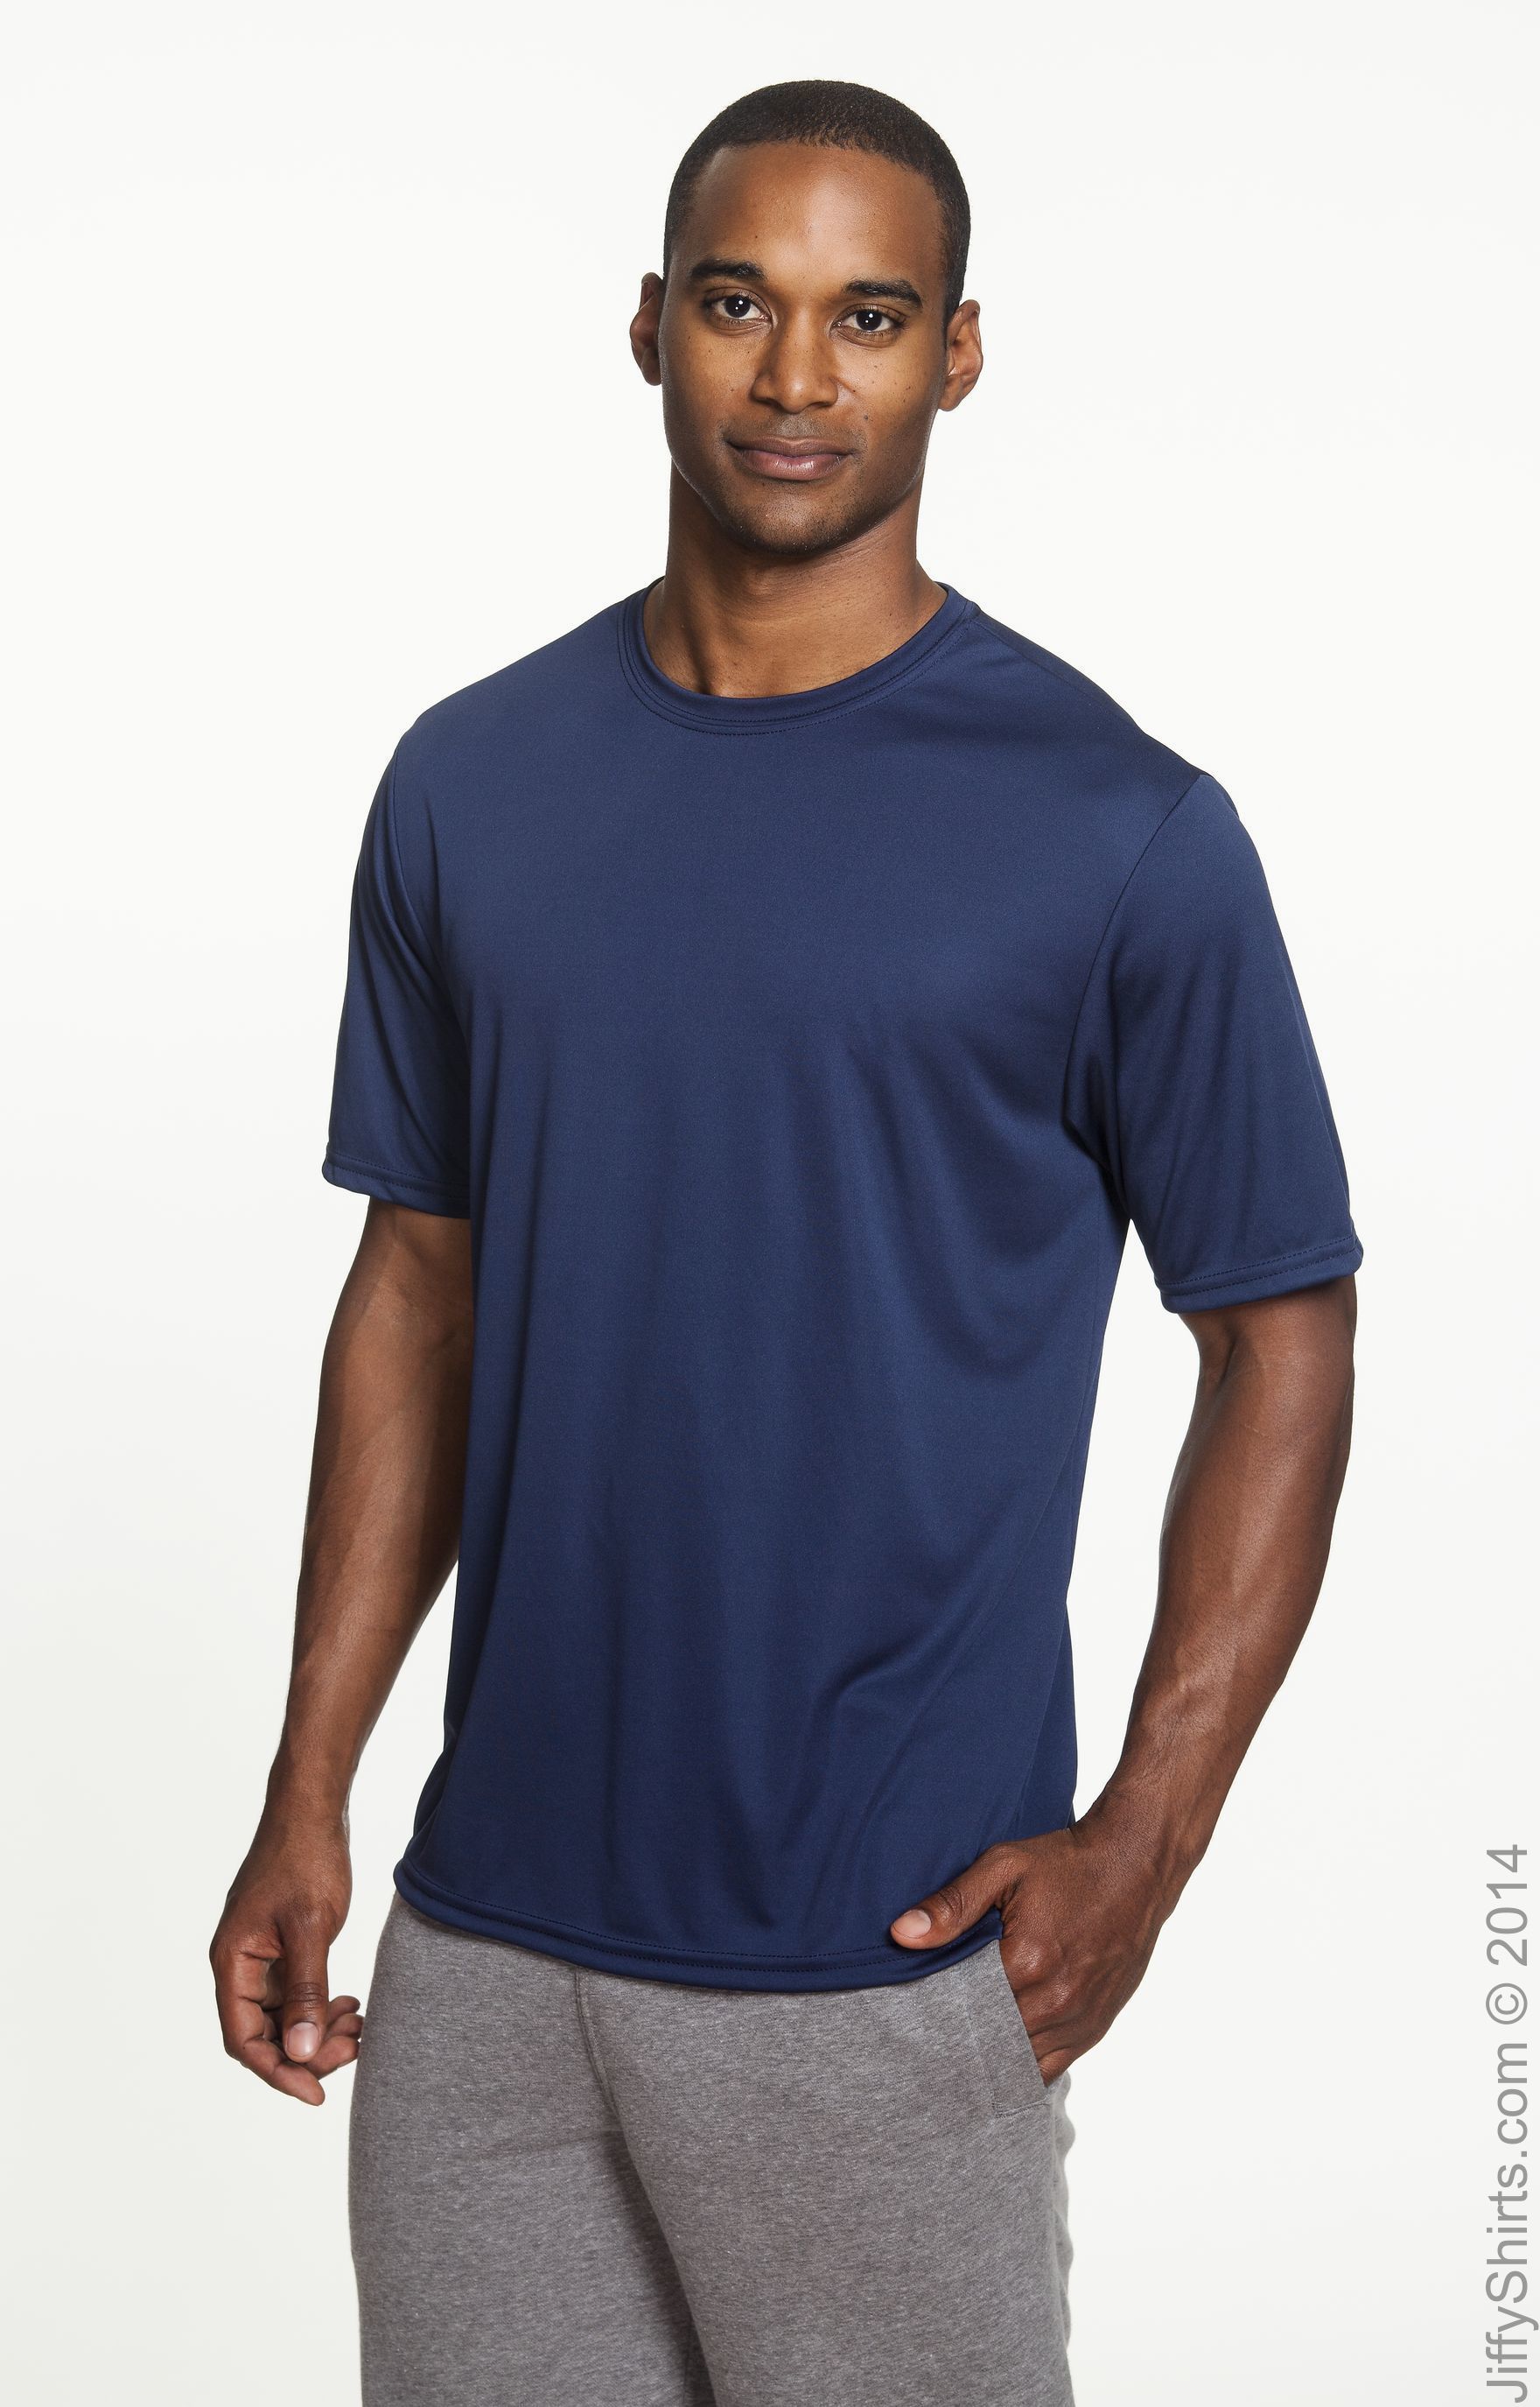 A4 N3142 Men's Cooling Performance T Shirt | Jiffy Shirts